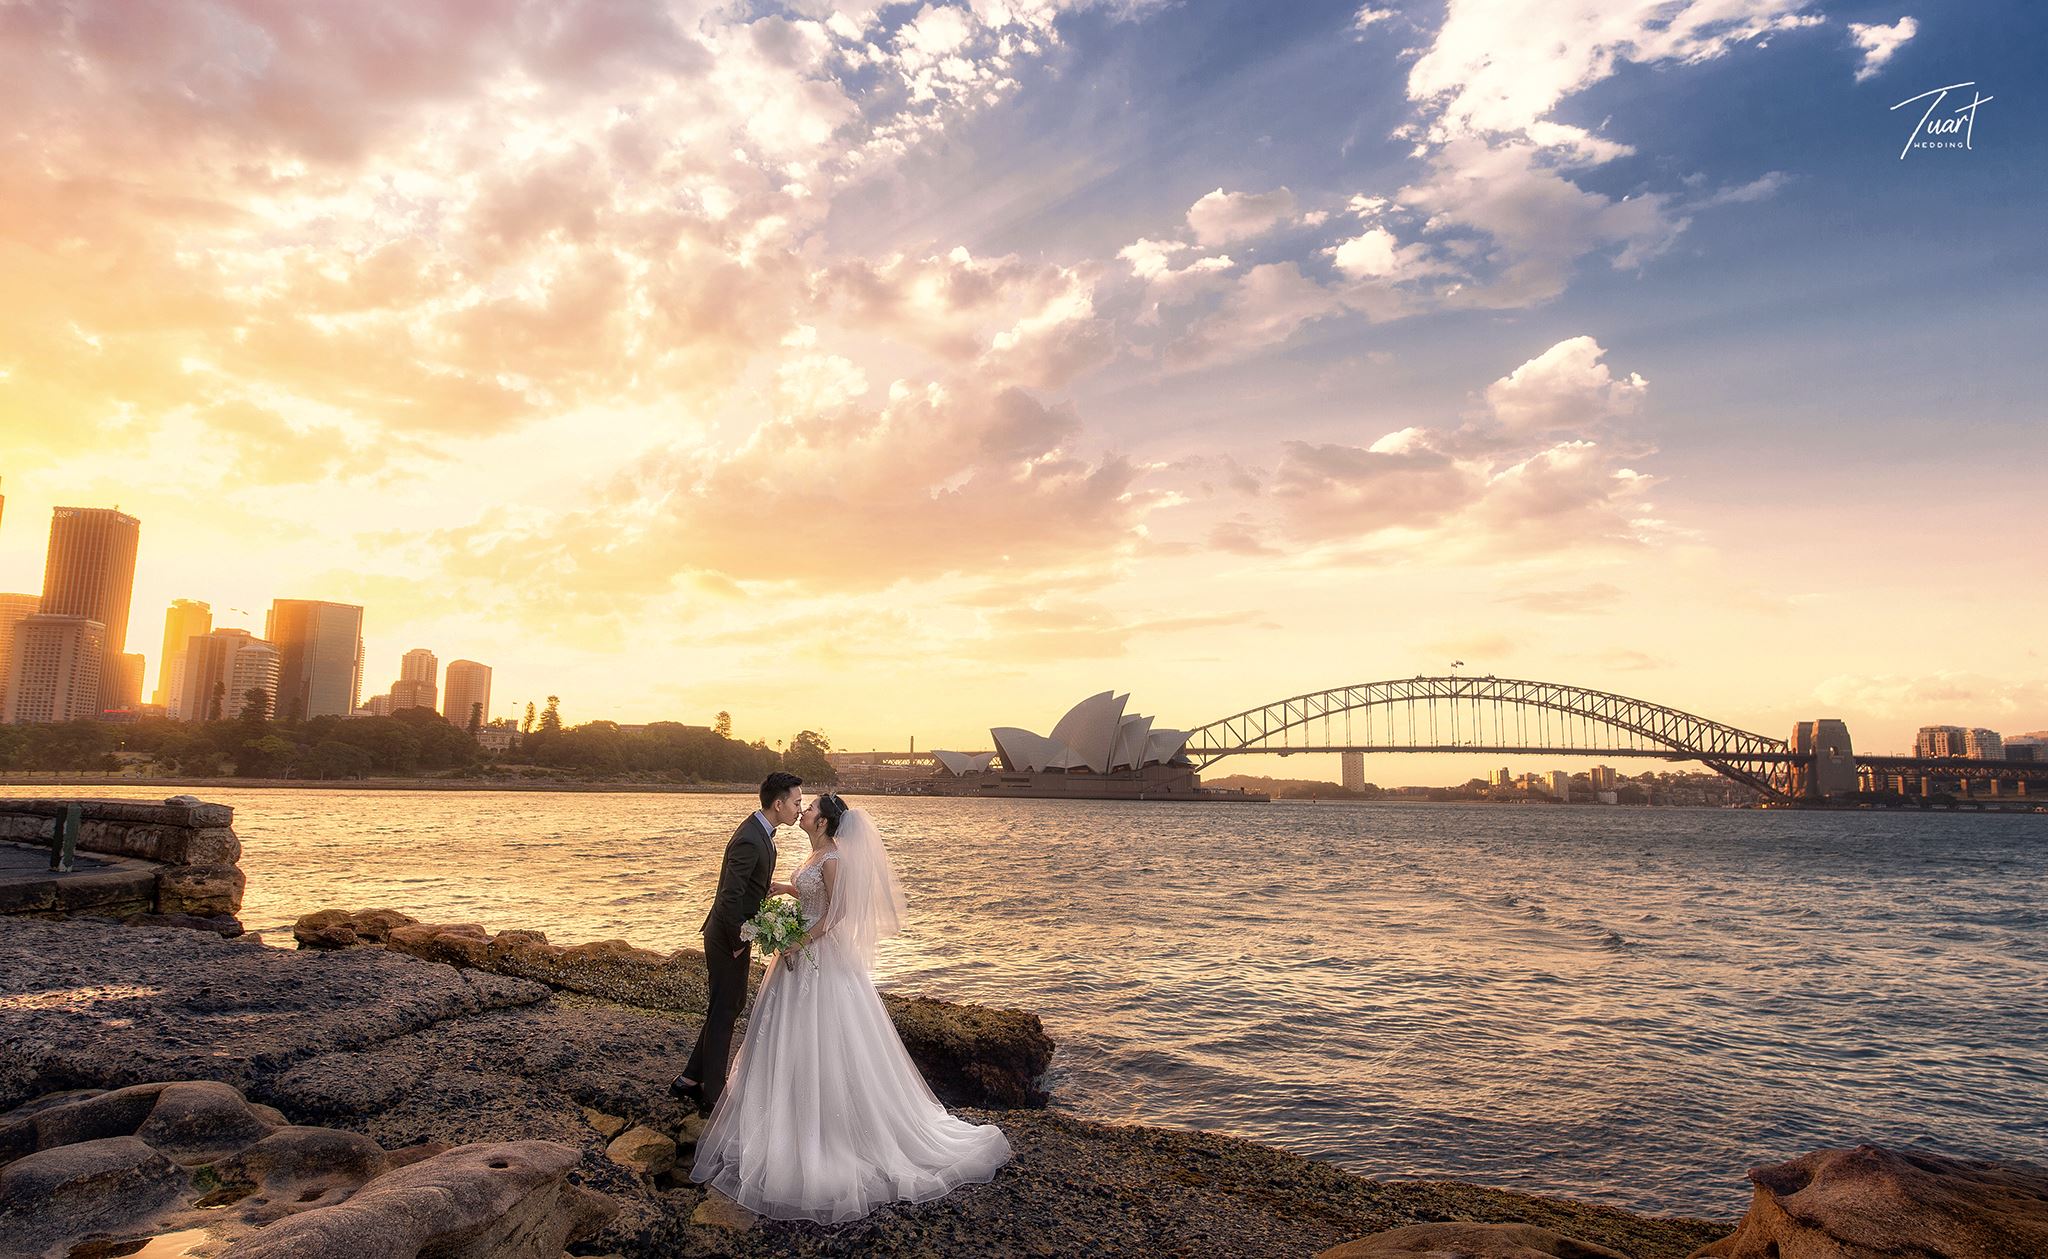 Album chụp ảnh cưới đẹp tại Australia: Jack-Rose 10